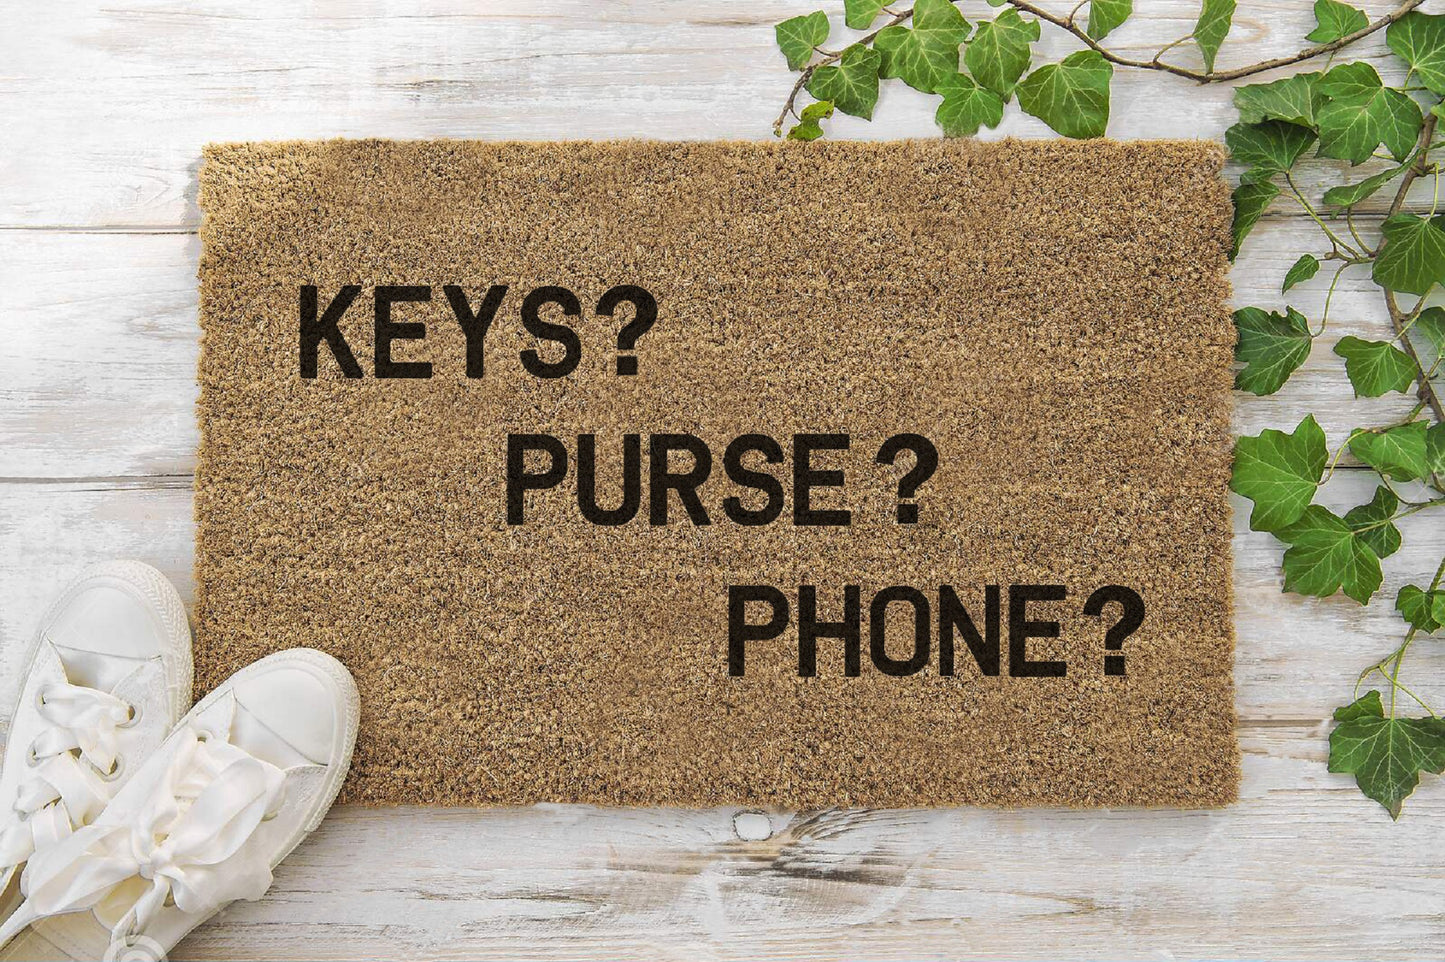 Keys Purse Phone